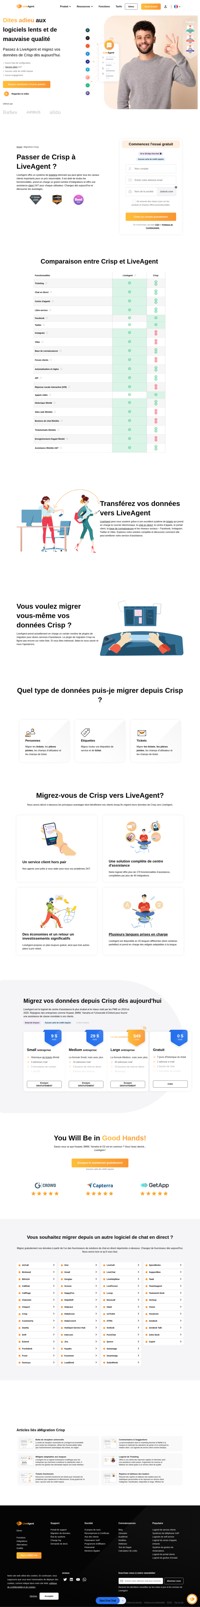 LiveAgent est une solution de help desk qui rationnalise plusieurs canaux dans une seule interface. Migrez de Crisp vers LiveAgent et commencez à bénéficier des avantages du secteur.